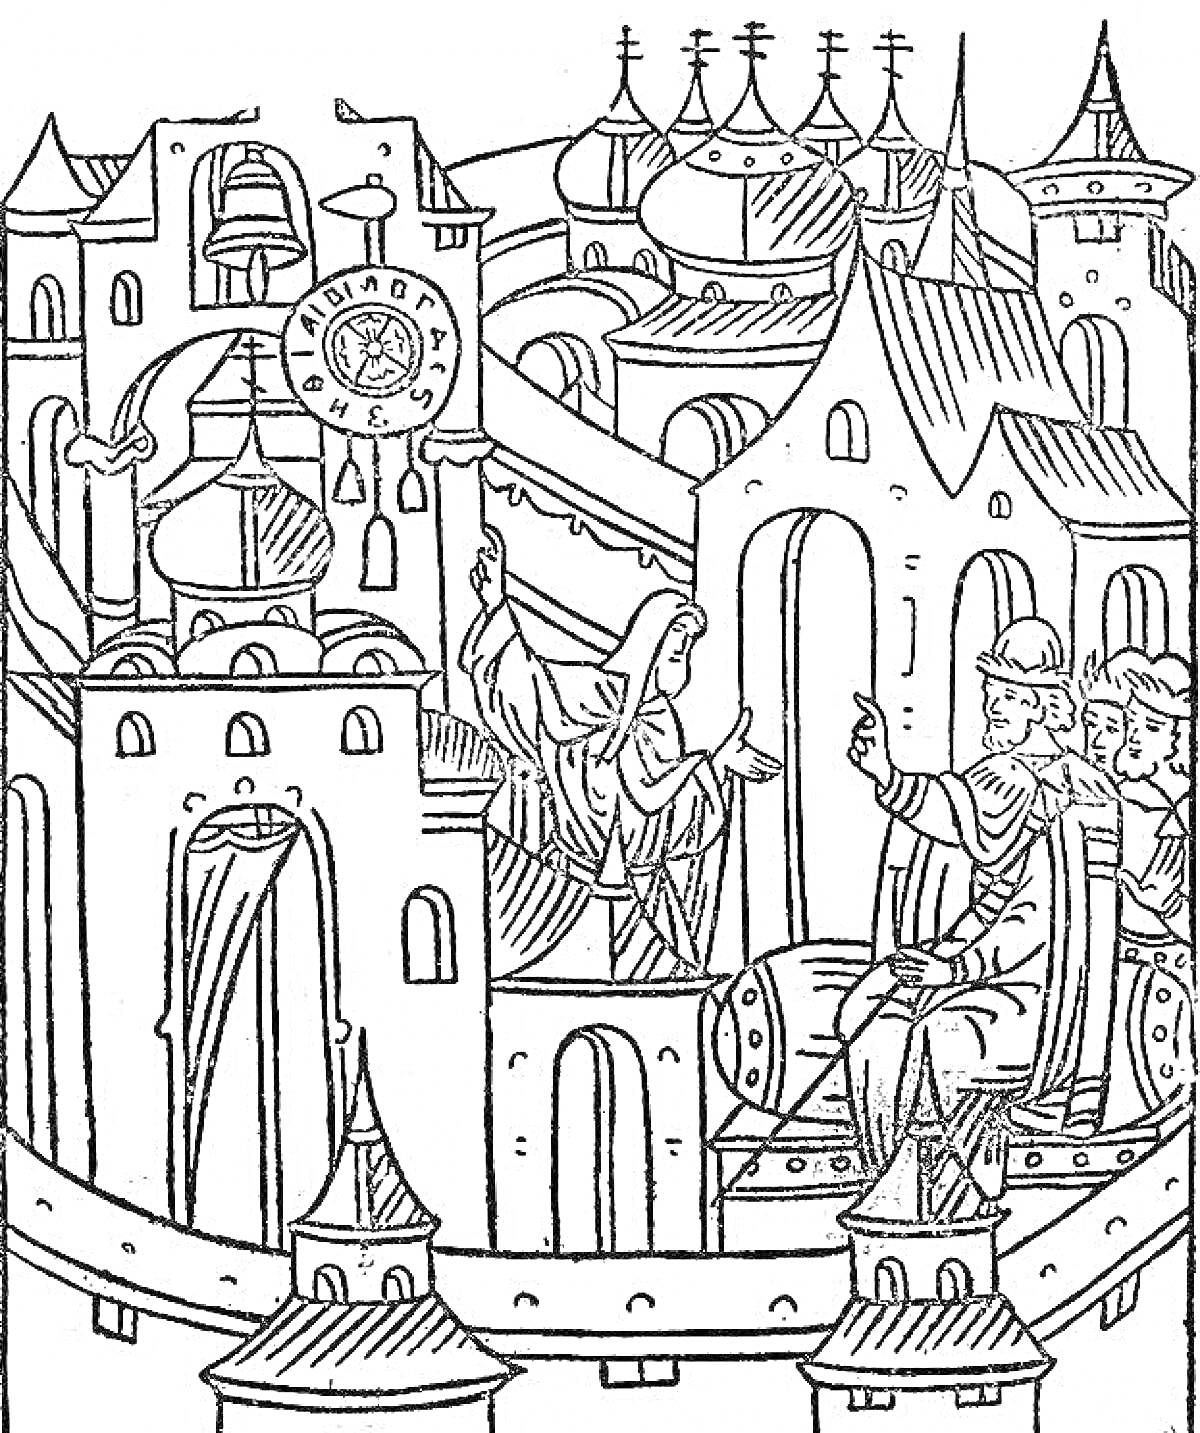 Миниатюра с изображением средневекового города с башнями, зданиями, куполами, фигурой человека на троне и фигурами на стене